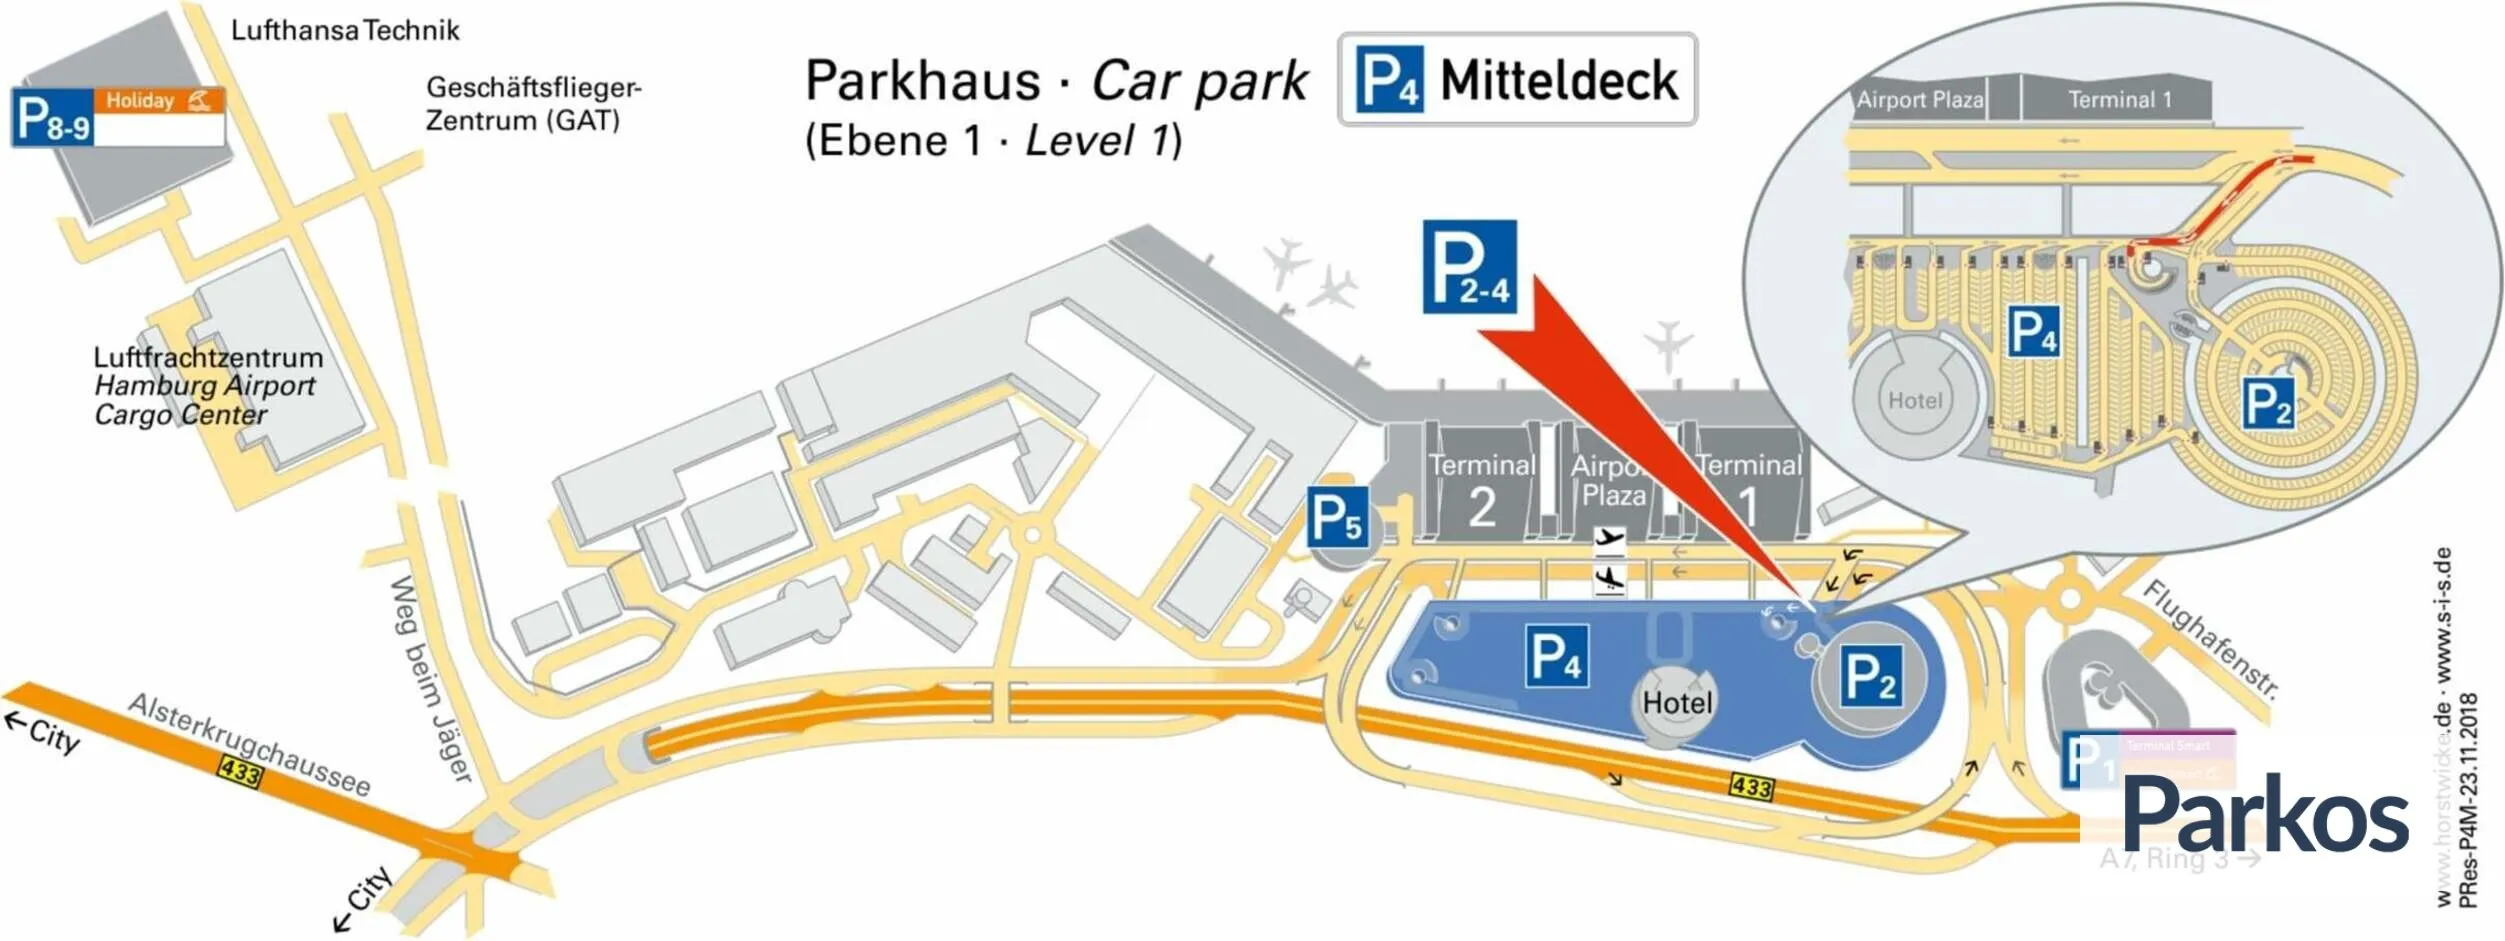 Hamburg Airport P4 Mitteldeck - Parken Flughafen Hamburg - picture 1